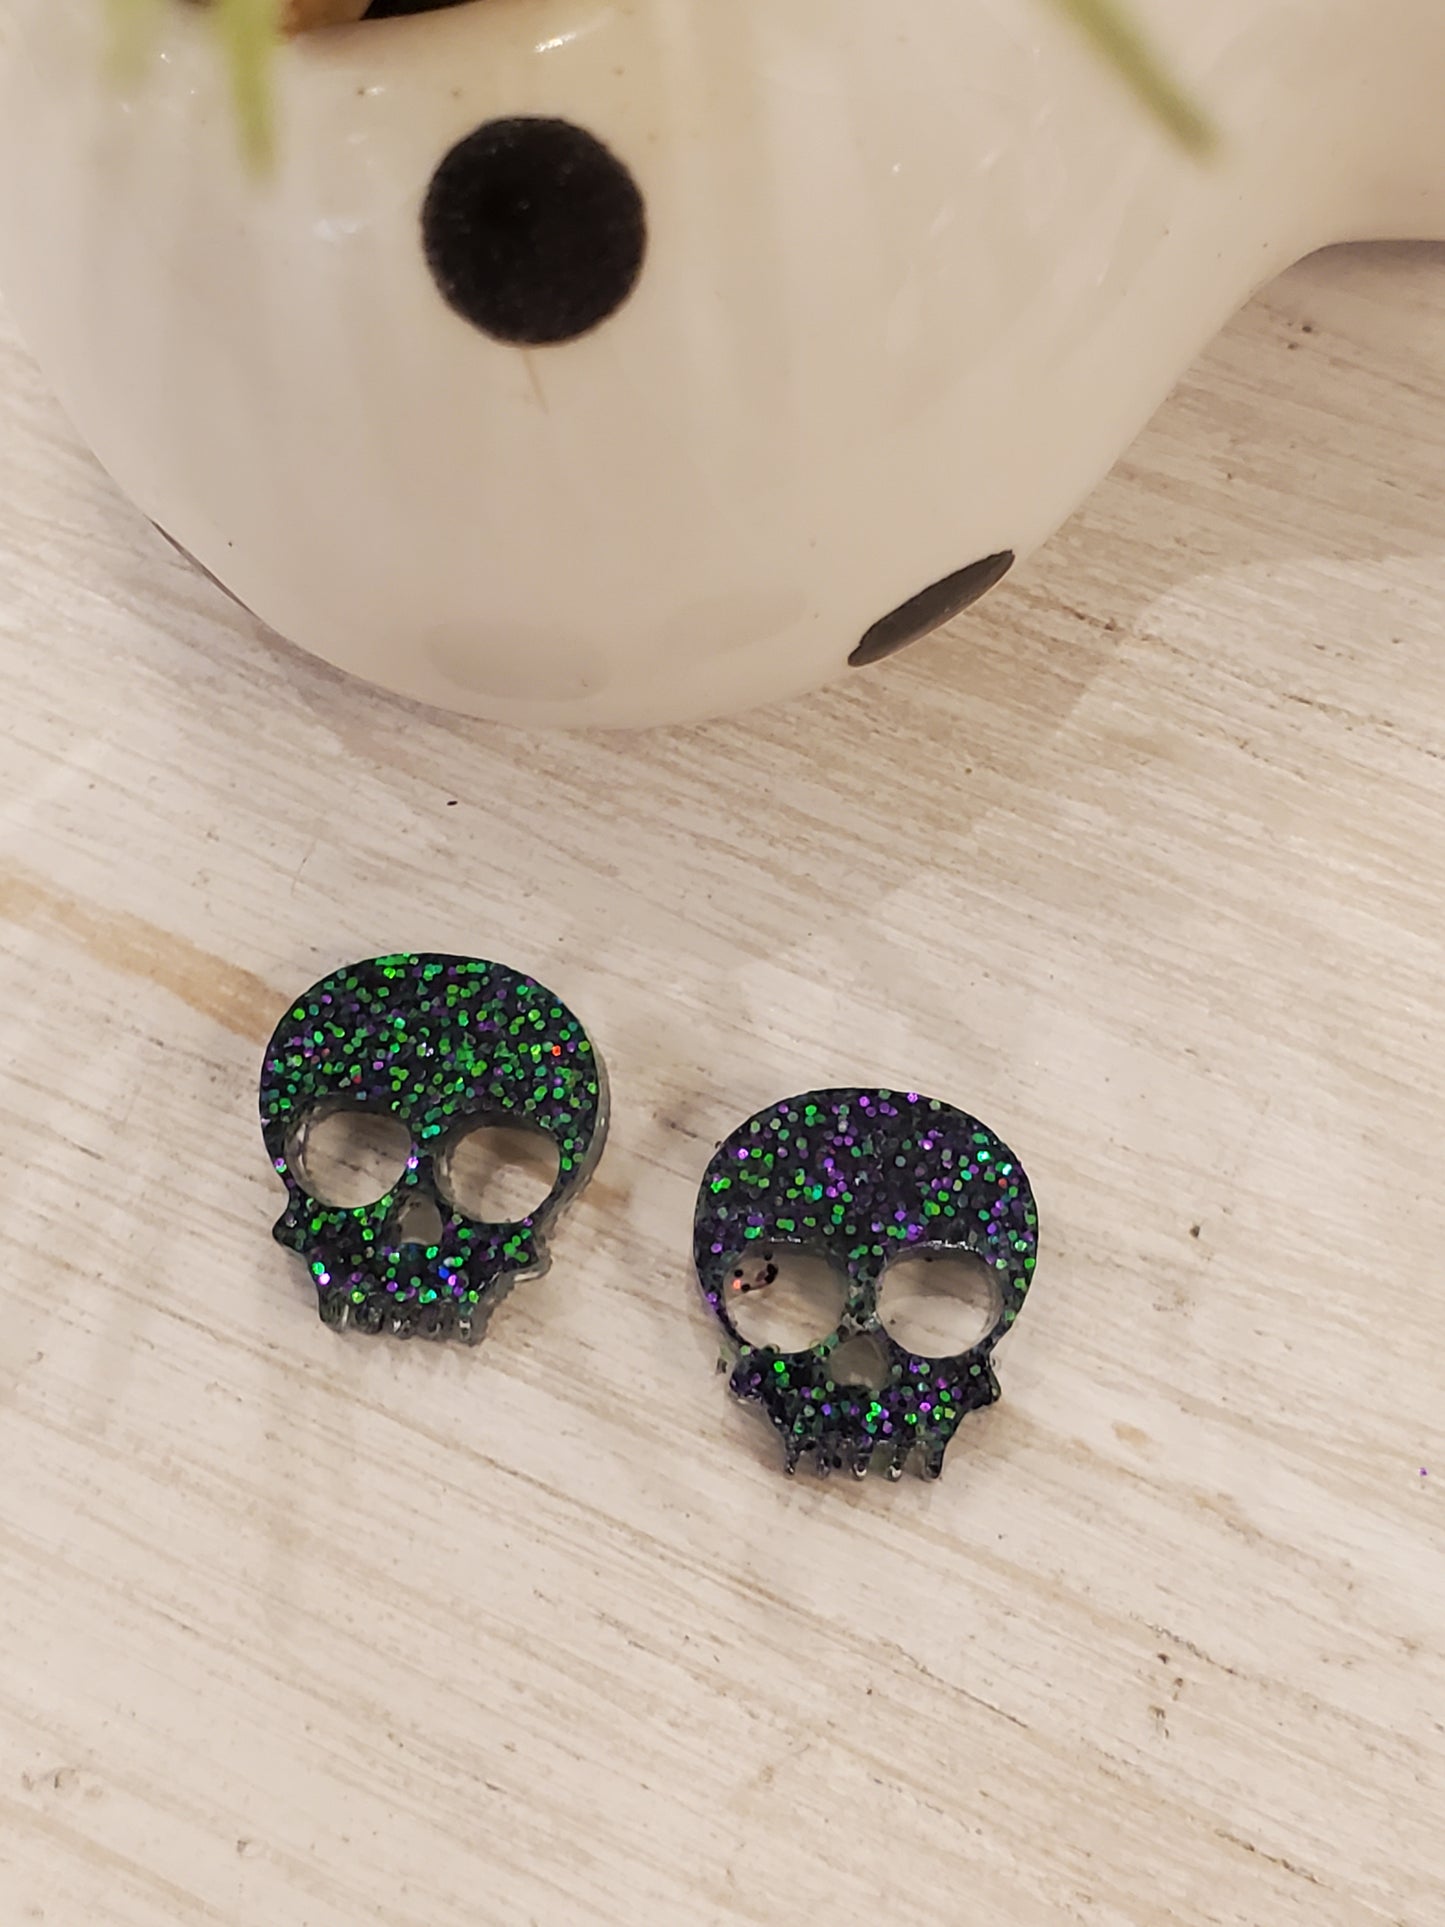 Handmade resin and glitter Skull purple/green earrings small studs